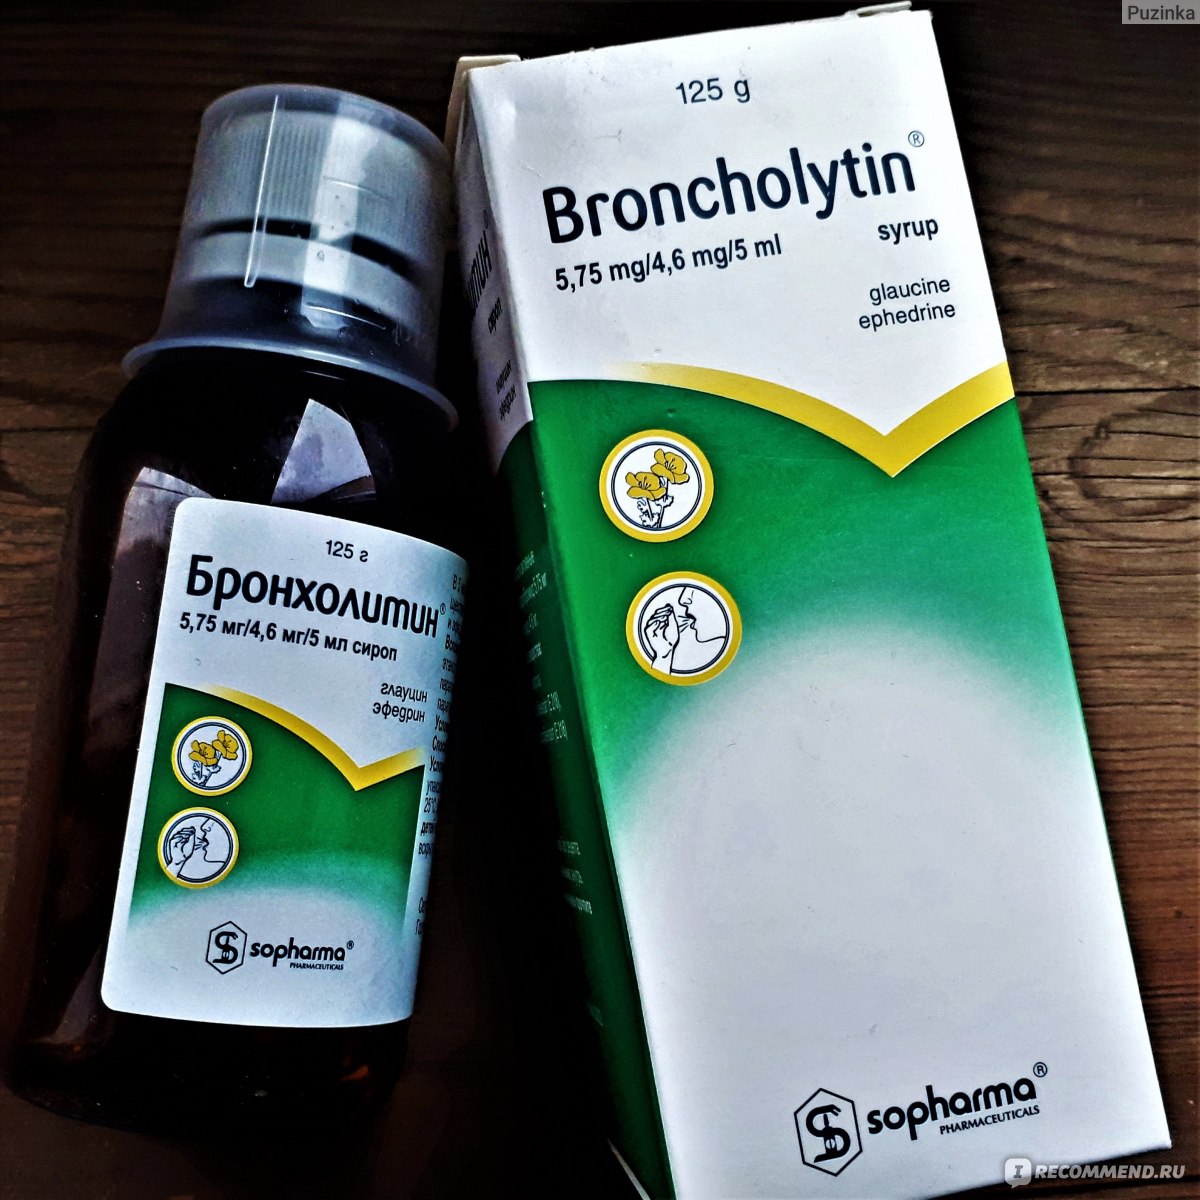 Бронхолитин (Broncholytin): описание, рецепт, инструкция